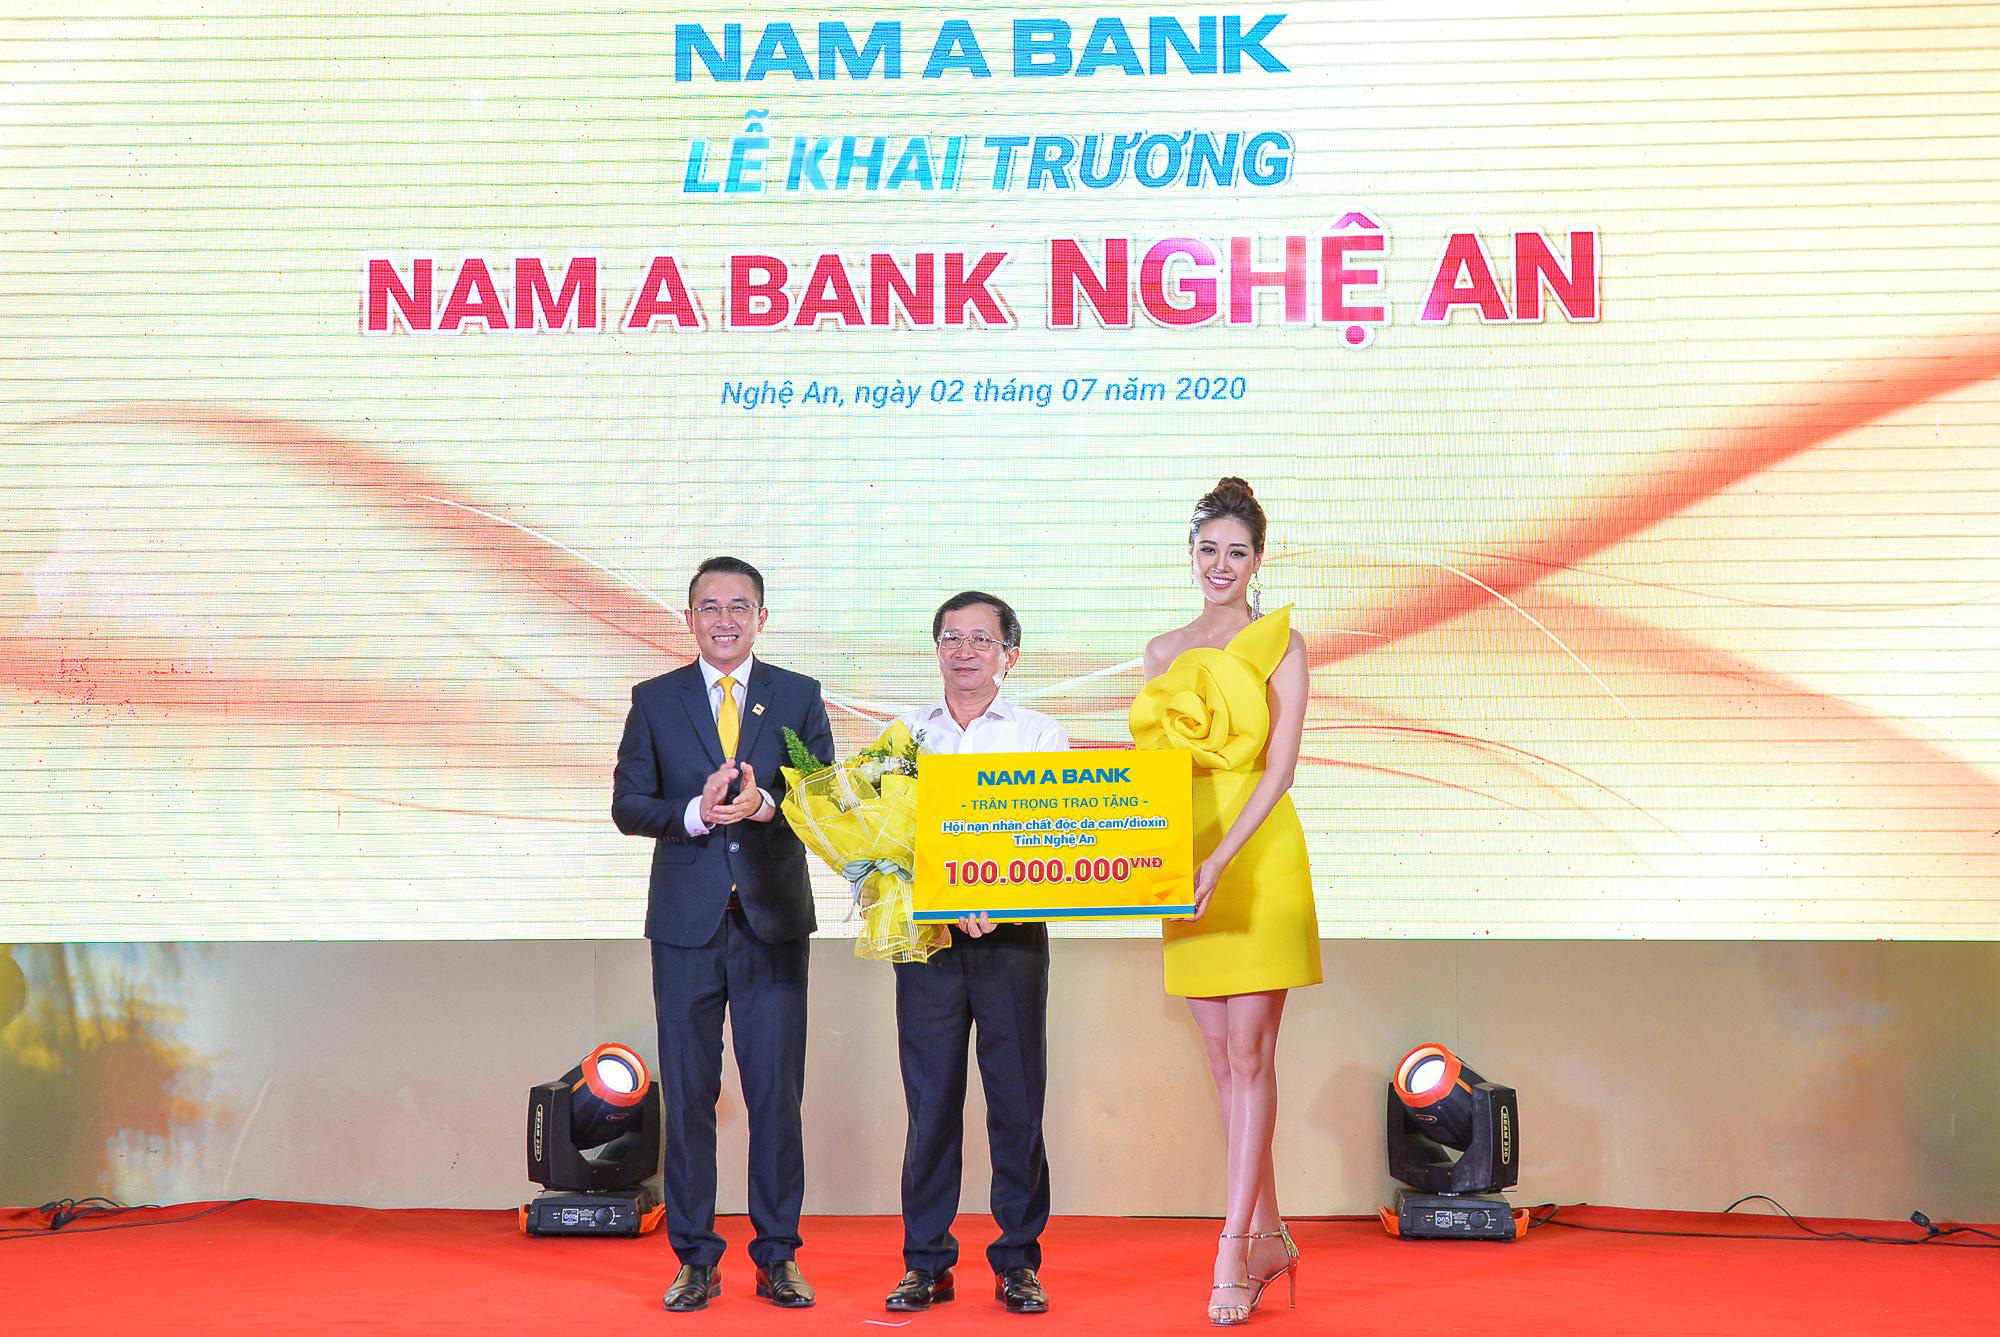 Trao 100 triệu đồng cho hội nạn nhân chất độc da cam tại lễ khai trương Nam A Bank Nghệ An - Ảnh 1.